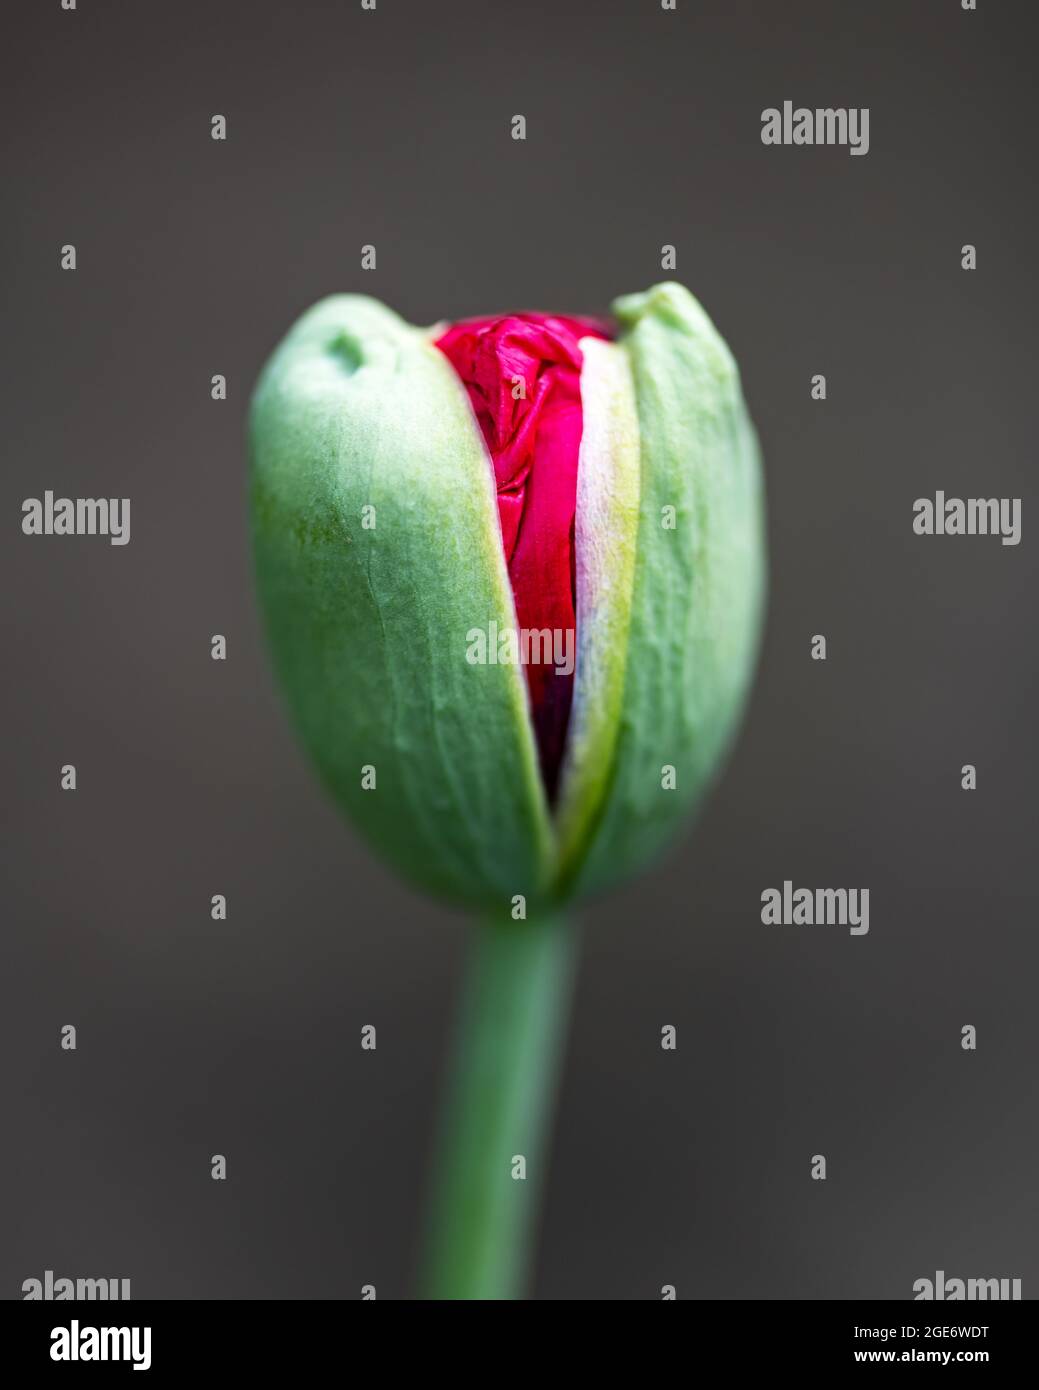 Jeune bourgeon de pavot vert avec pétales de fleur rouge à l'intérieur. Photographie macro Banque D'Images